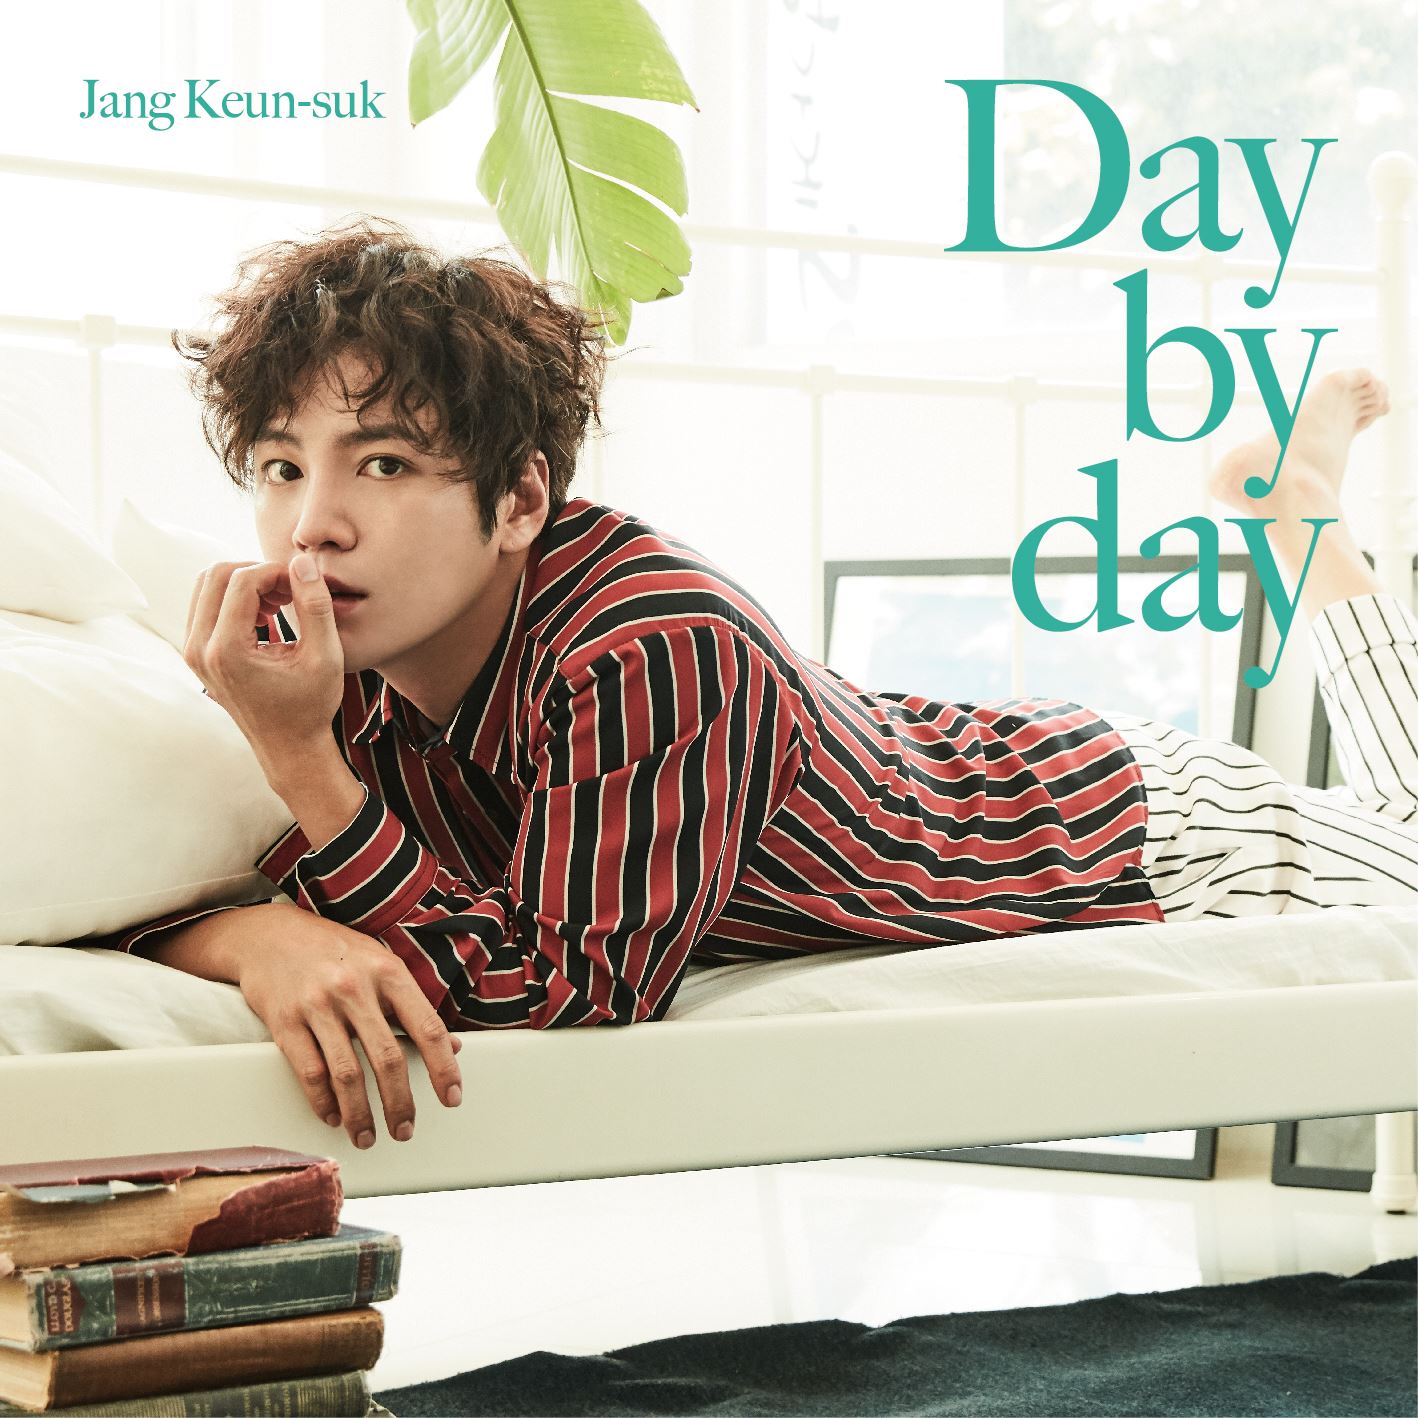 チャン・グンソク『Day by day』初回限定盤Aジャケット